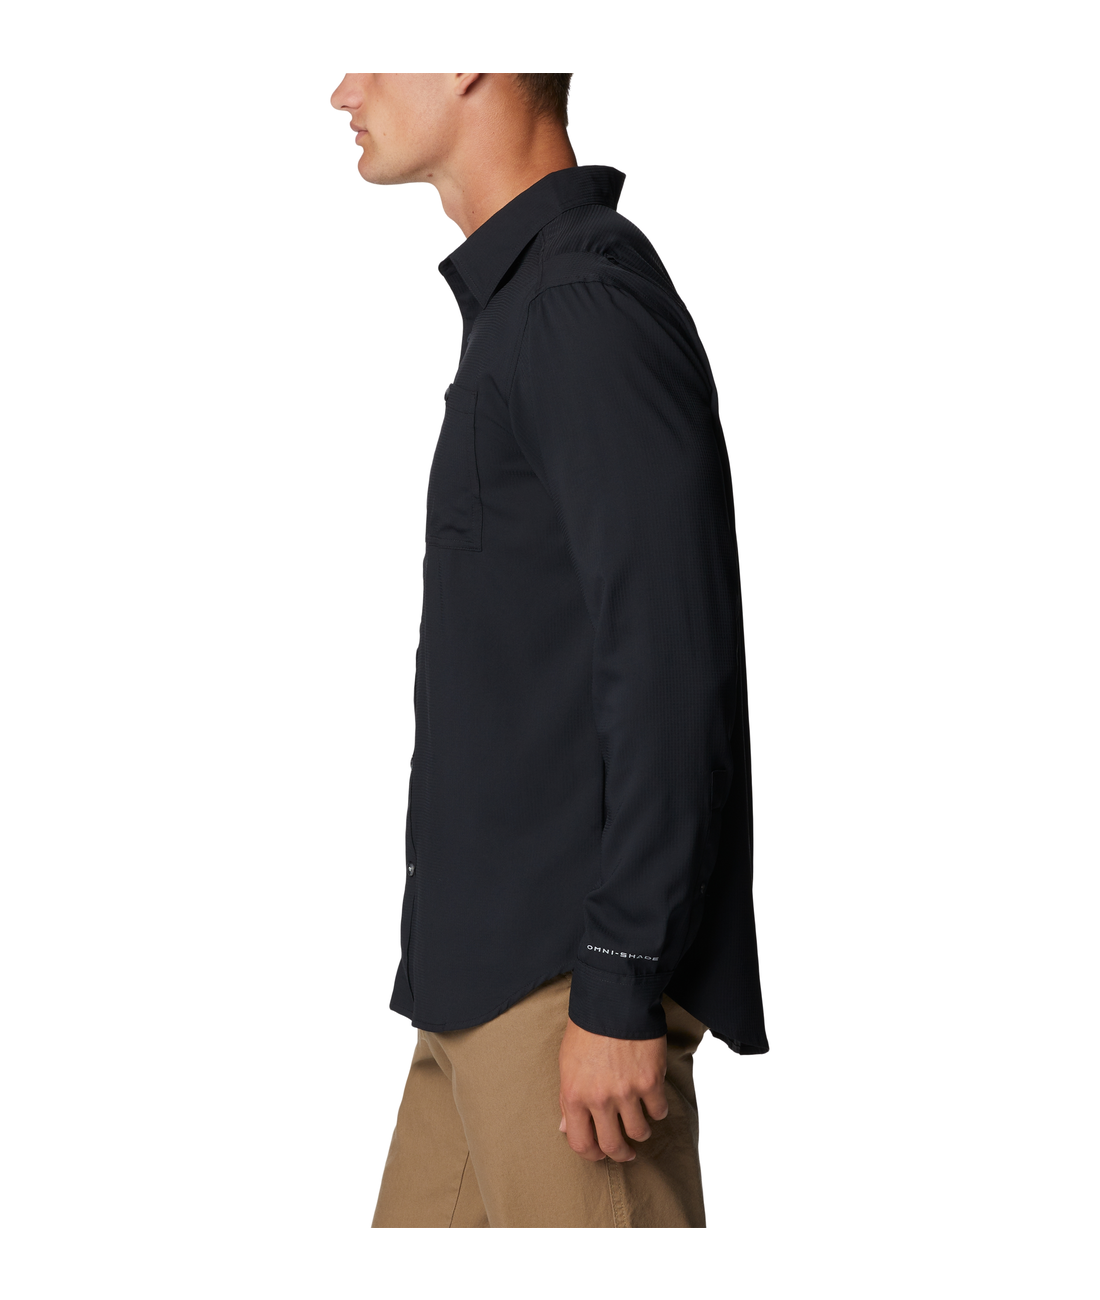 Utilizer Woven Long Sleeve Shirt